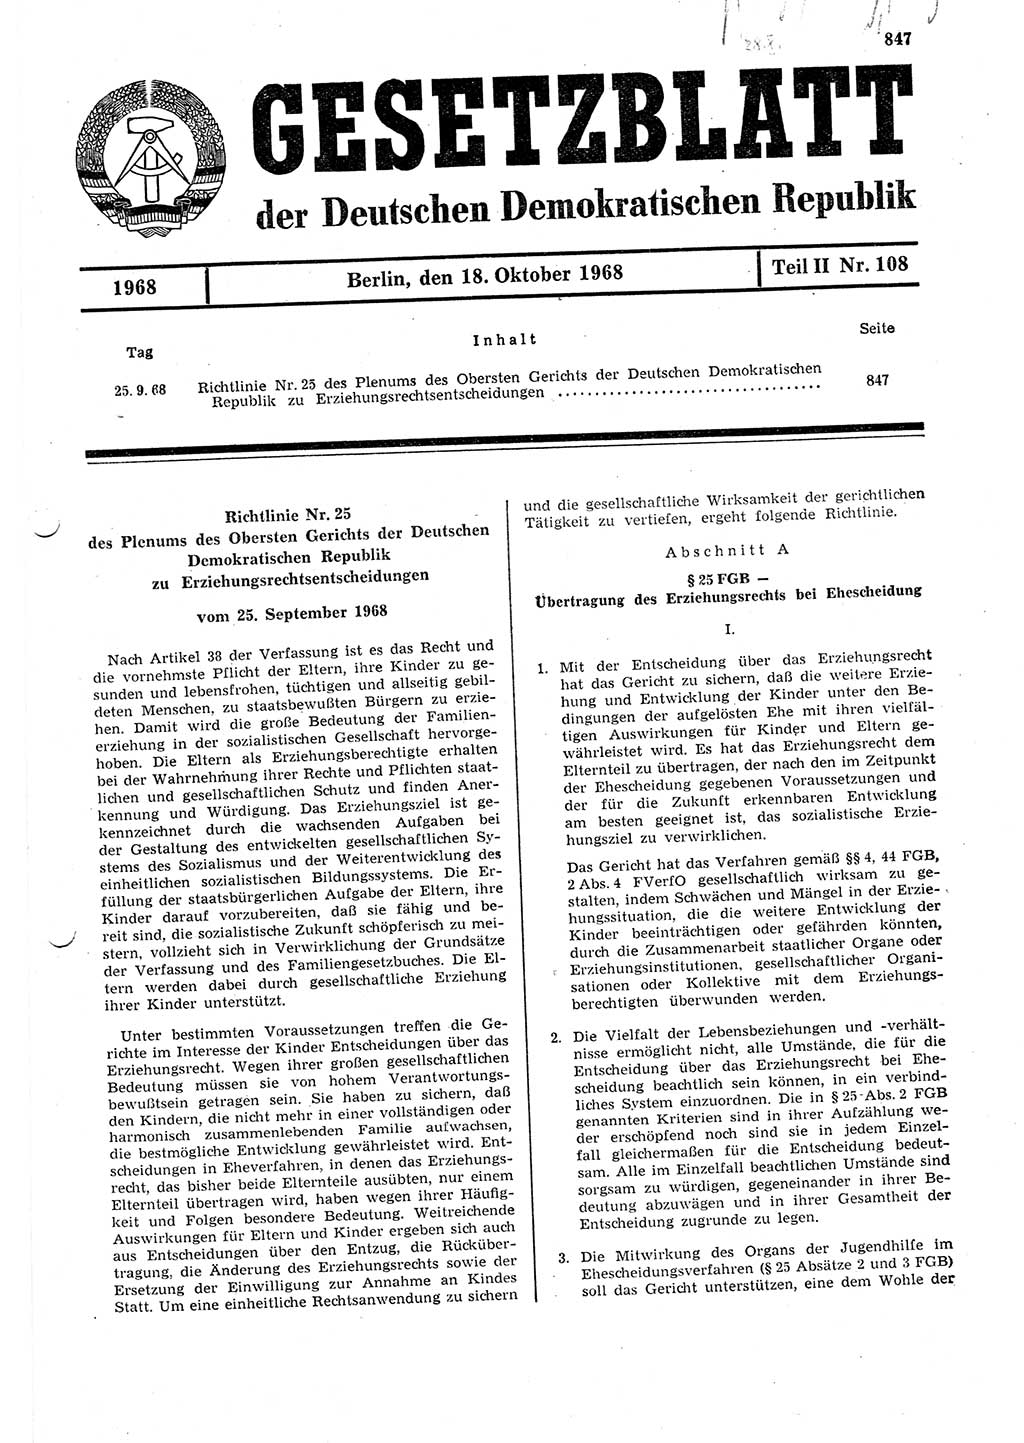 Gesetzblatt (GBl.) der Deutschen Demokratischen Republik (DDR) Teil ⅠⅠ 1968, Seite 847 (GBl. DDR ⅠⅠ 1968, S. 847)